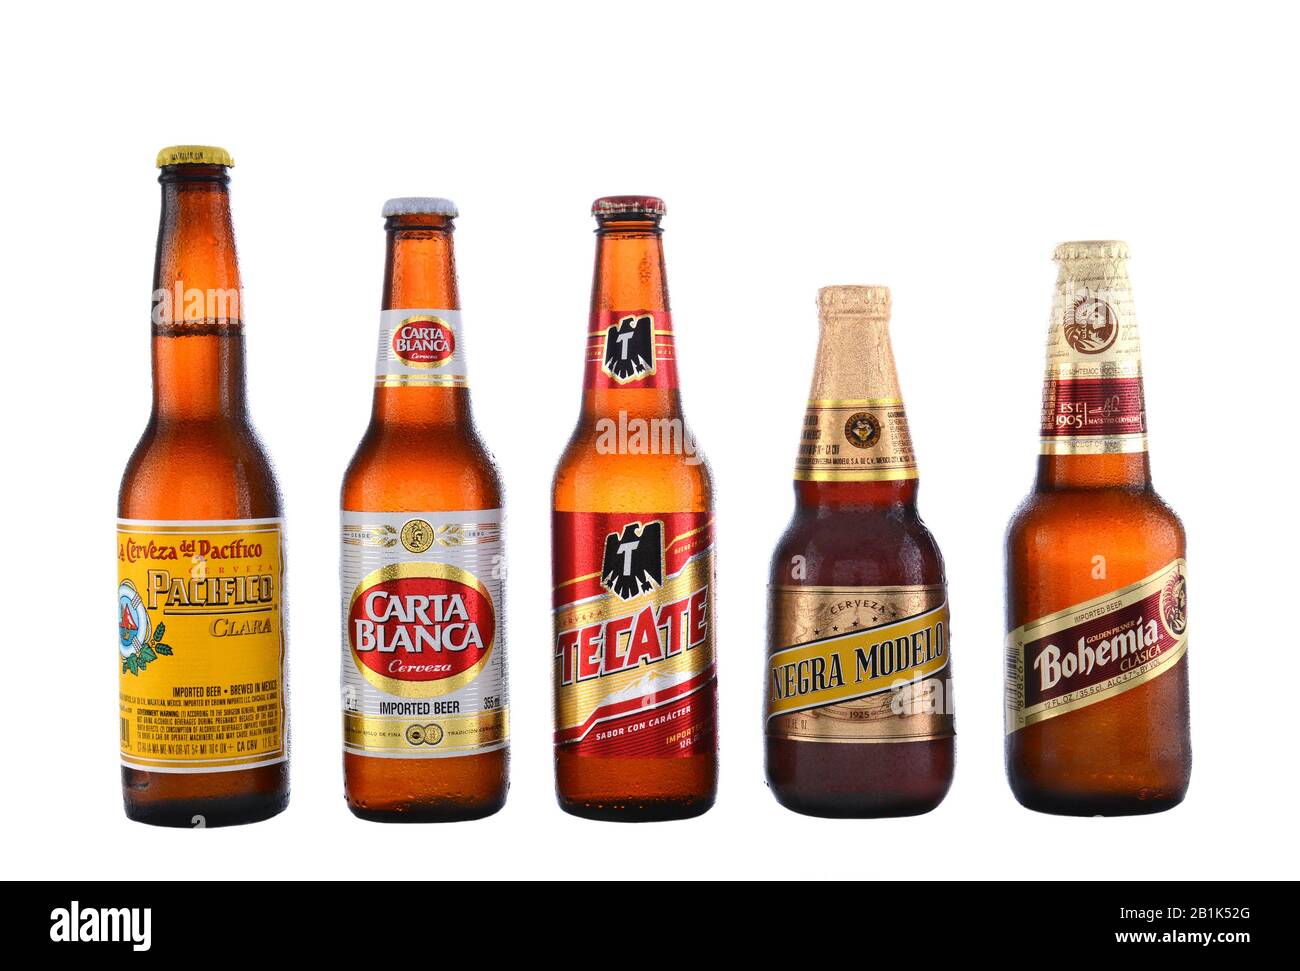 Irvine, CA - 14. JUNI 2015: Fünf mexikanische Biere. Pazifico, Carta Blanca, Tecate, Negra Modelo und Bohemia sind fünf der beliebtesten mexikanischen Biere i. Stockfoto